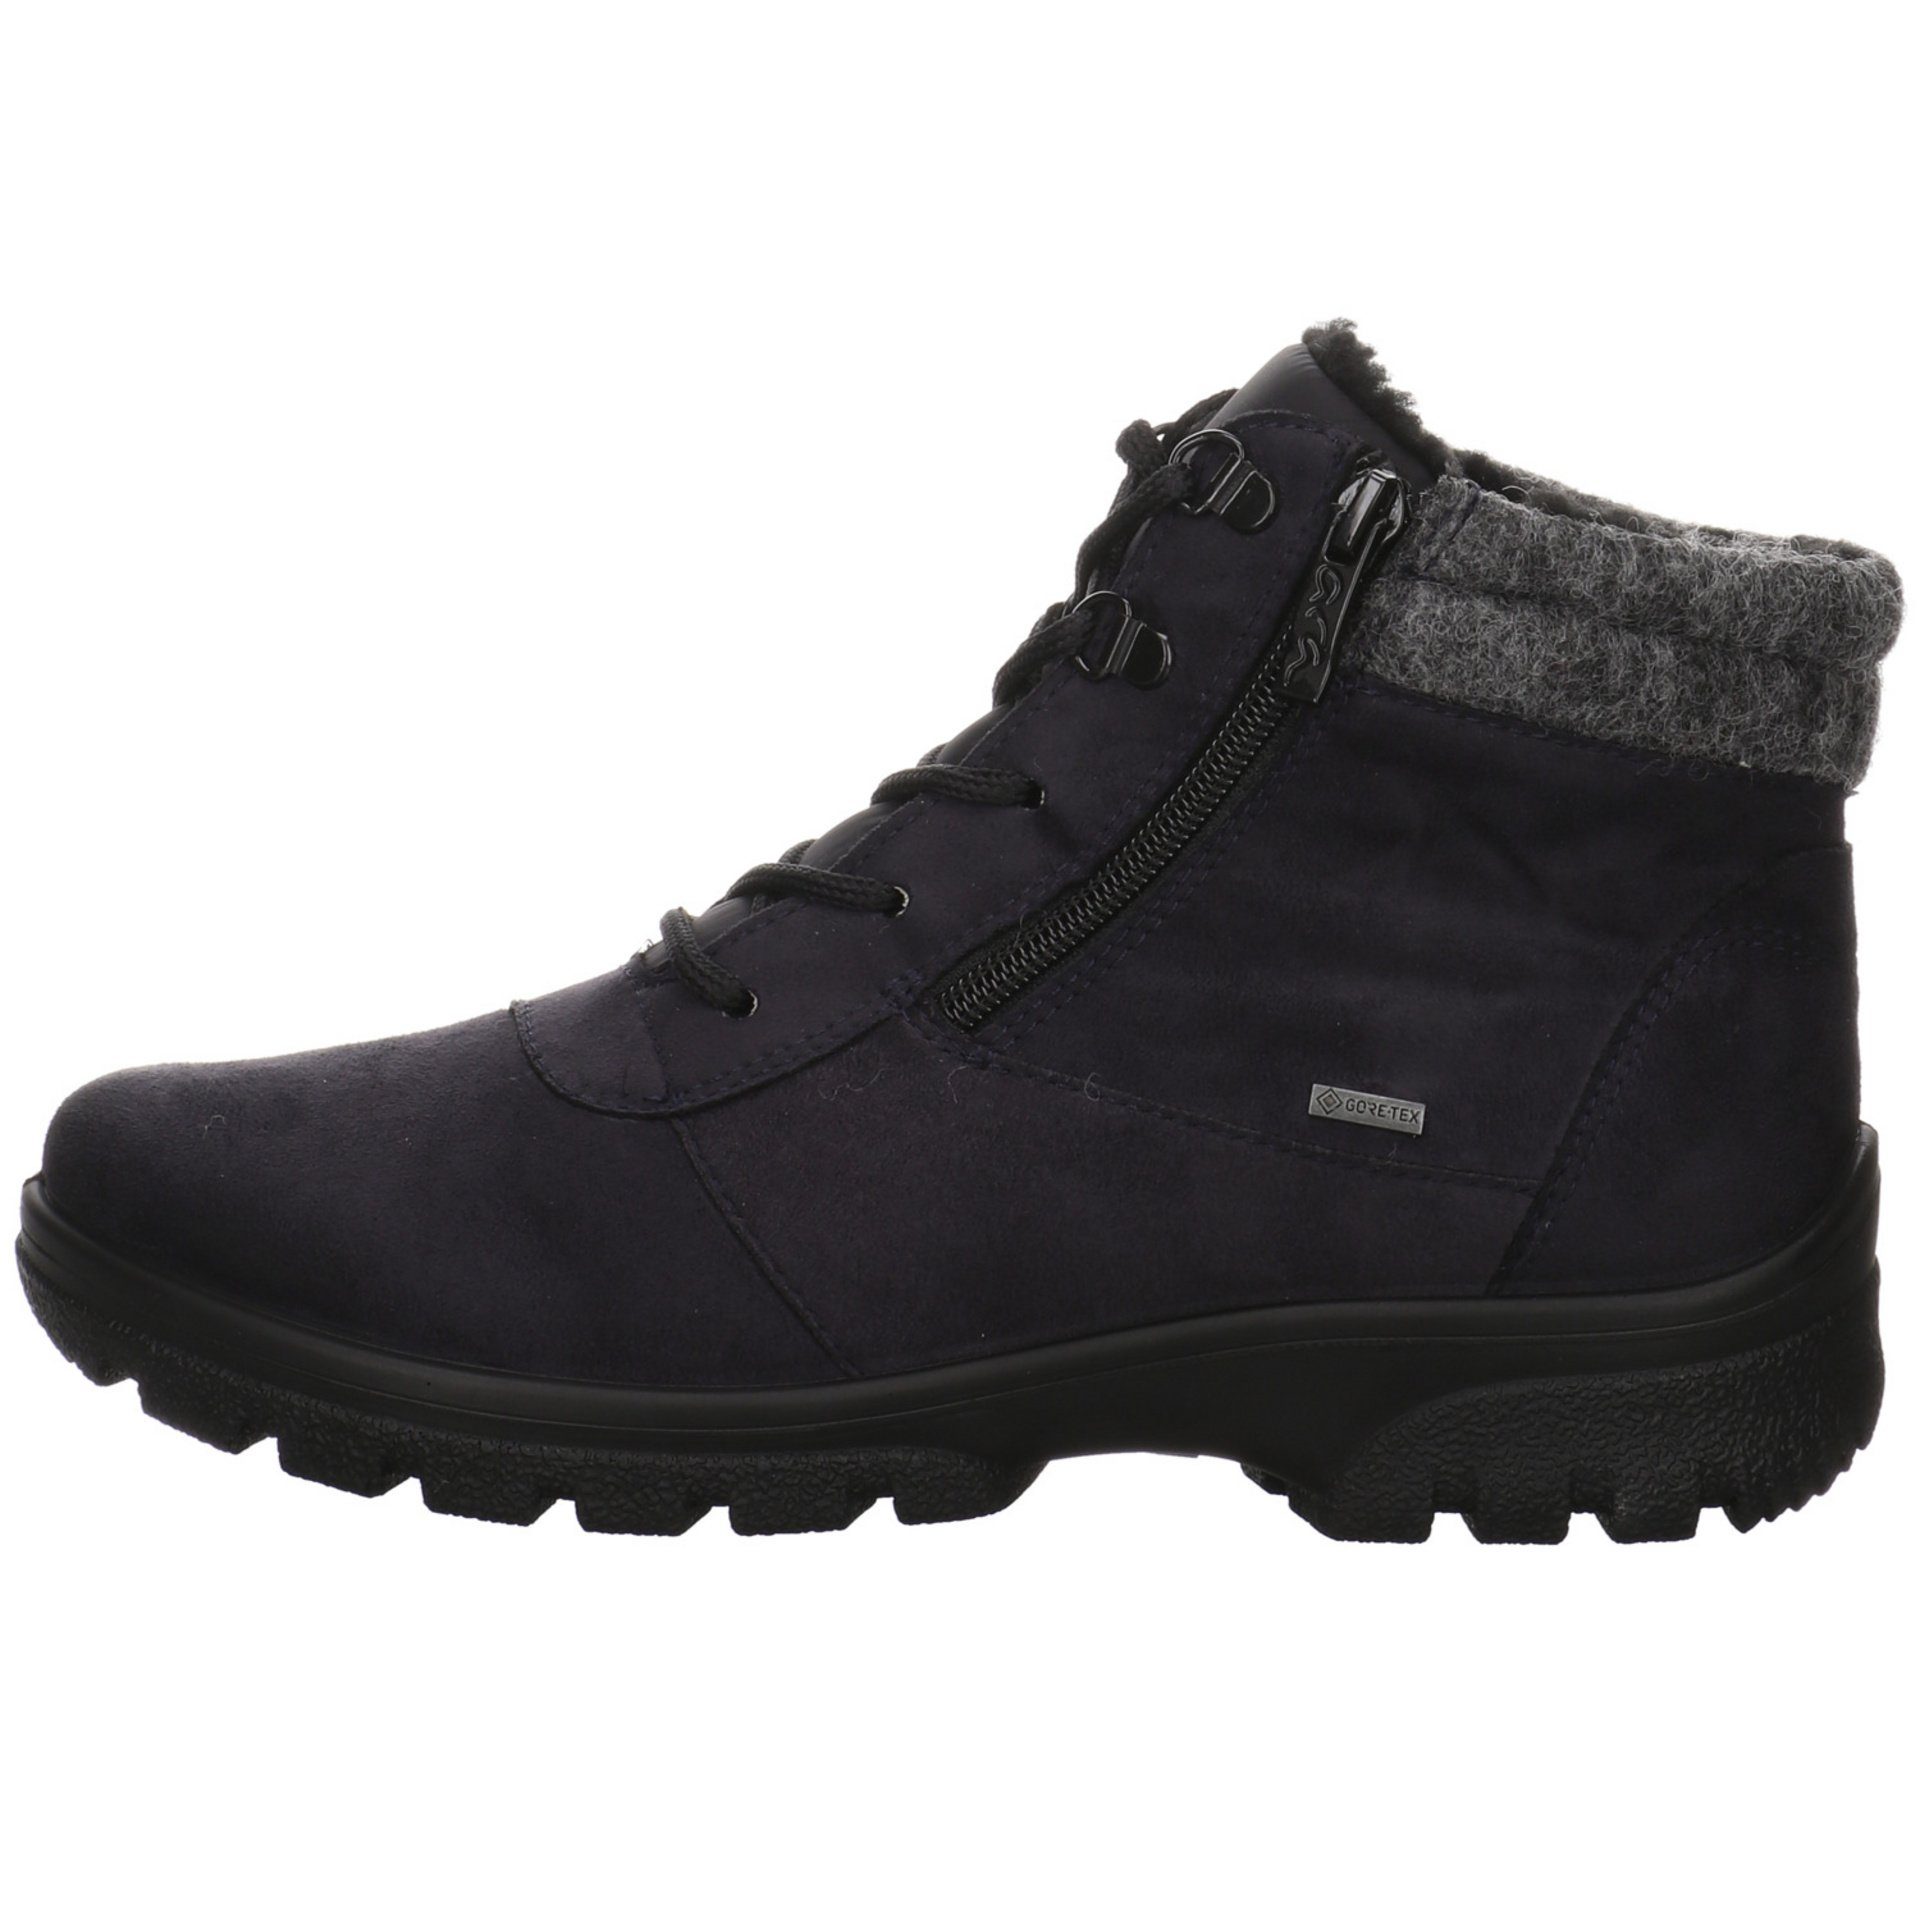 Ara Damen Snowboots blau/grau/schwarz Boots Leder-/Textilkombination Snowboots Schuhe Saas-Fee